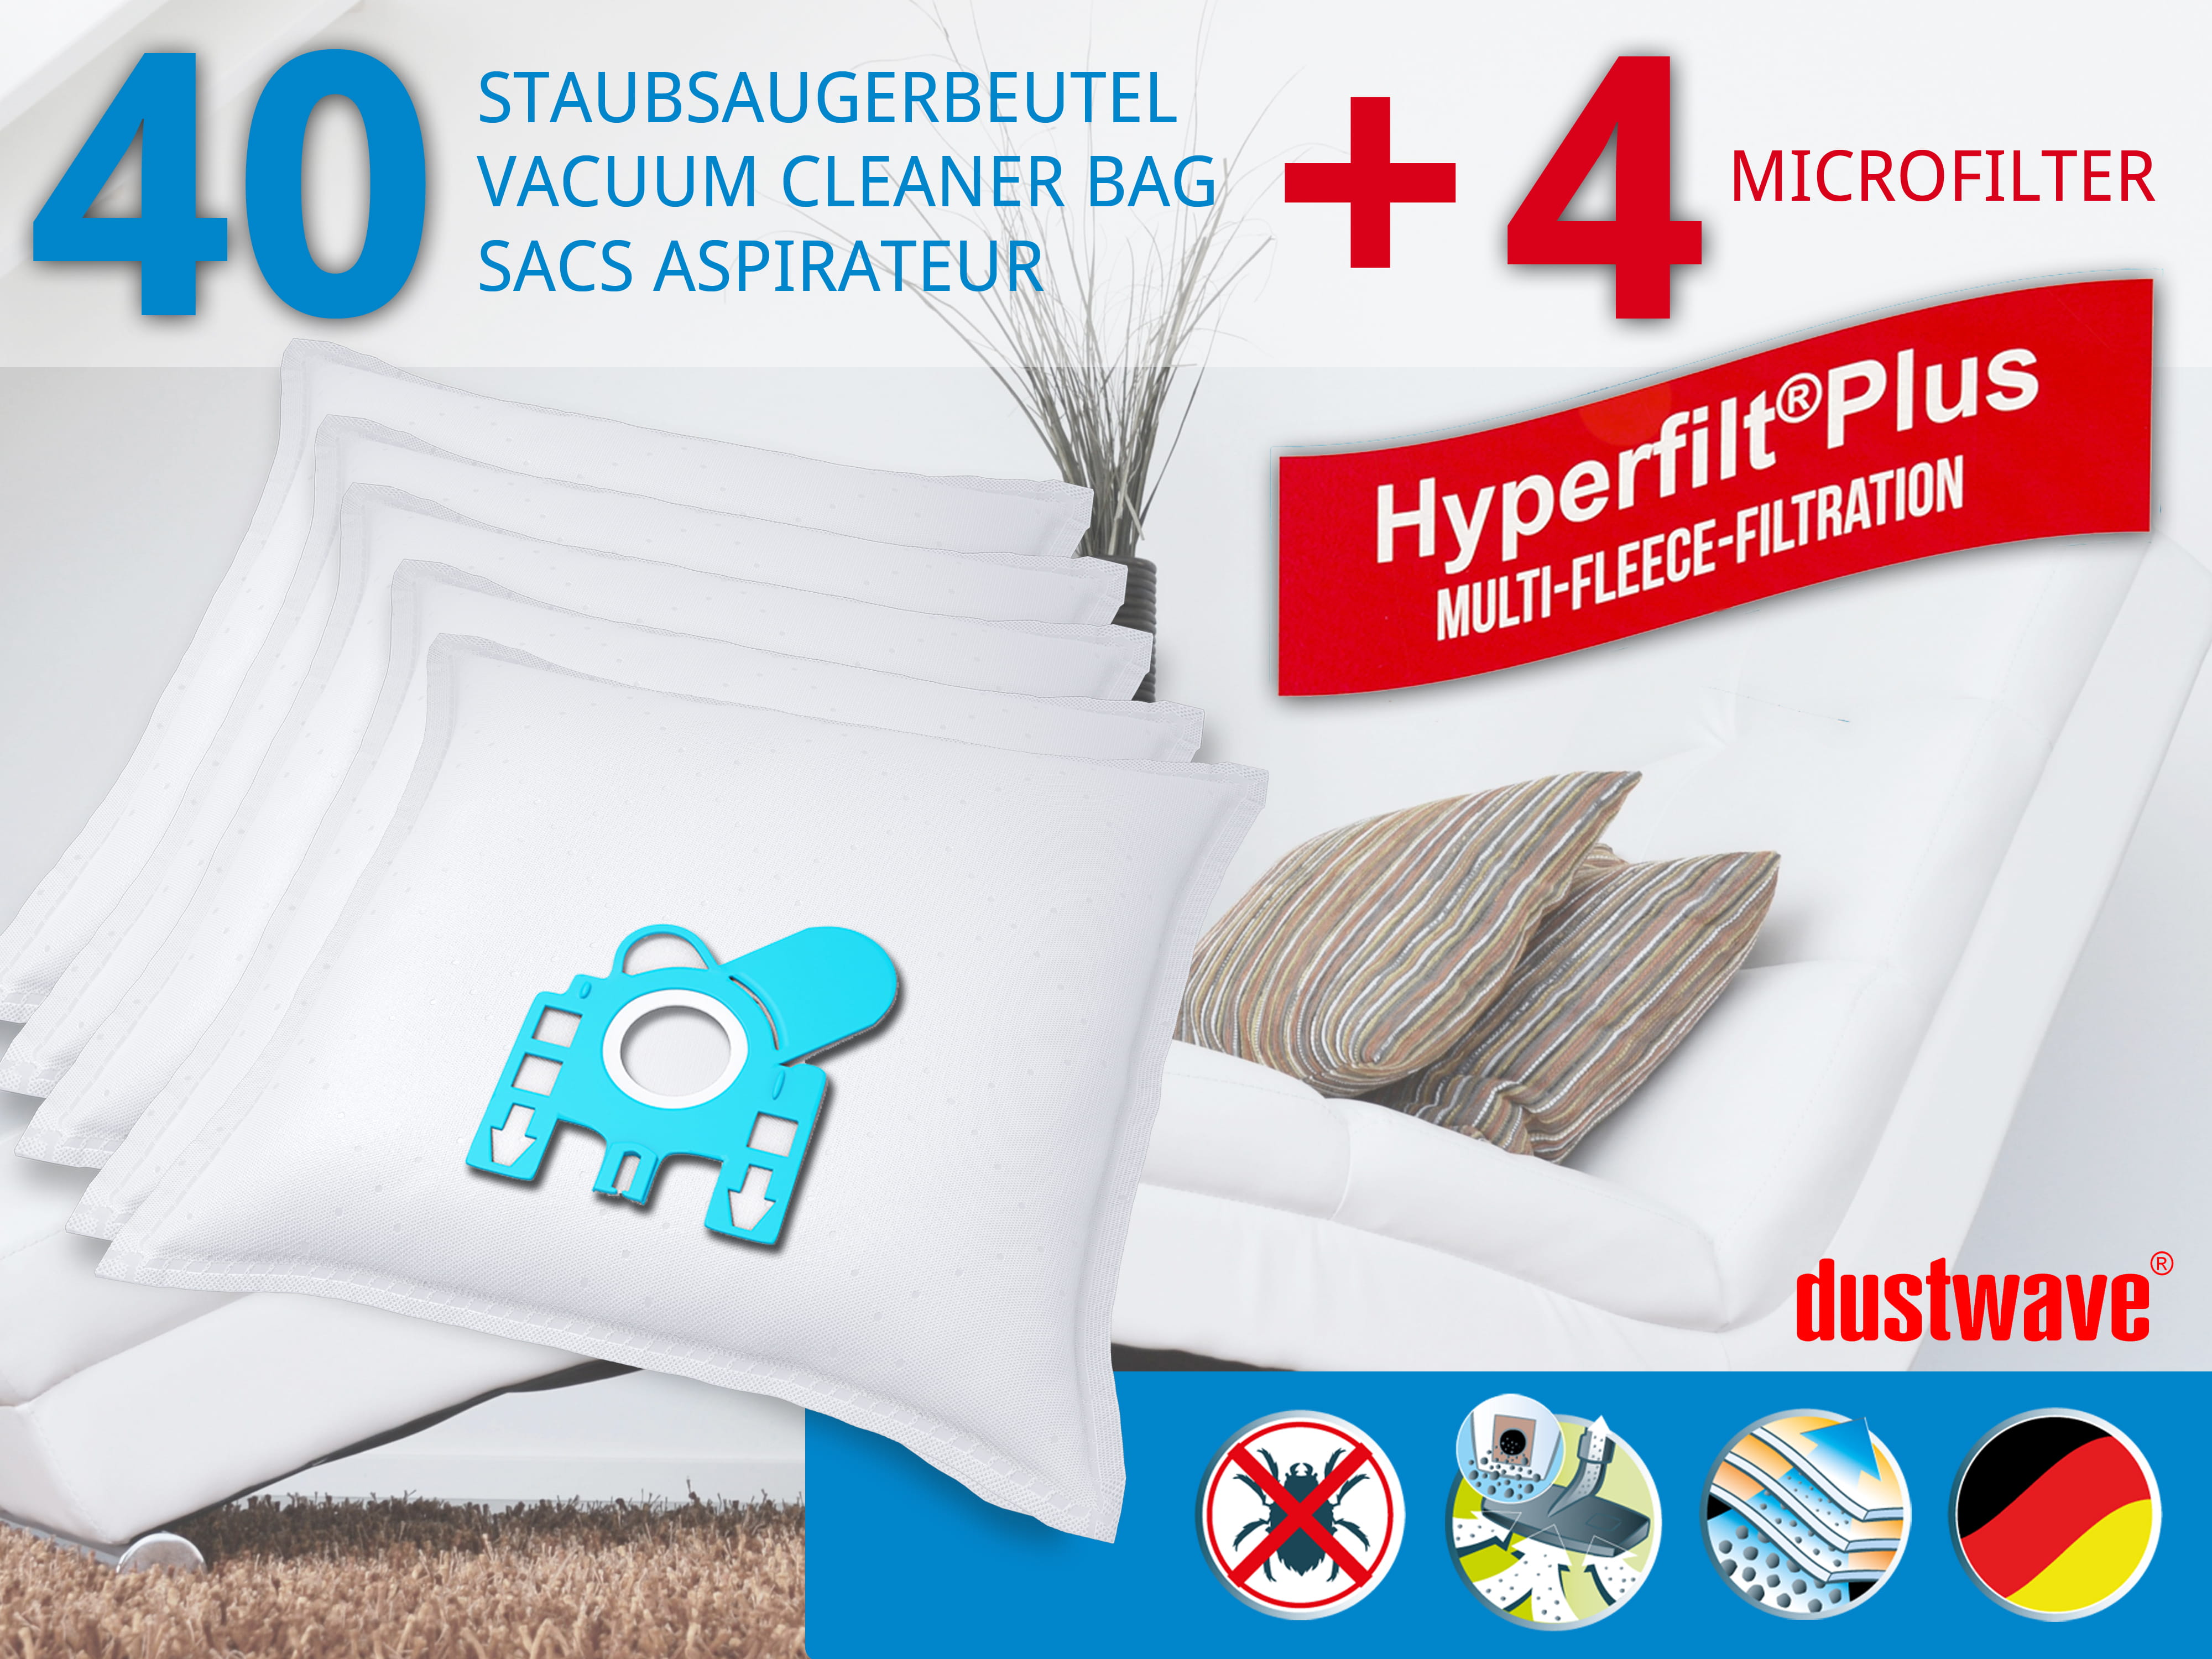 Dustwave® 40 Staubsaugerbeutel für Hoover 39000417 - hocheffizient, mehrlagiges Mikrovlies mit Hygieneverschluss - Made in Germany